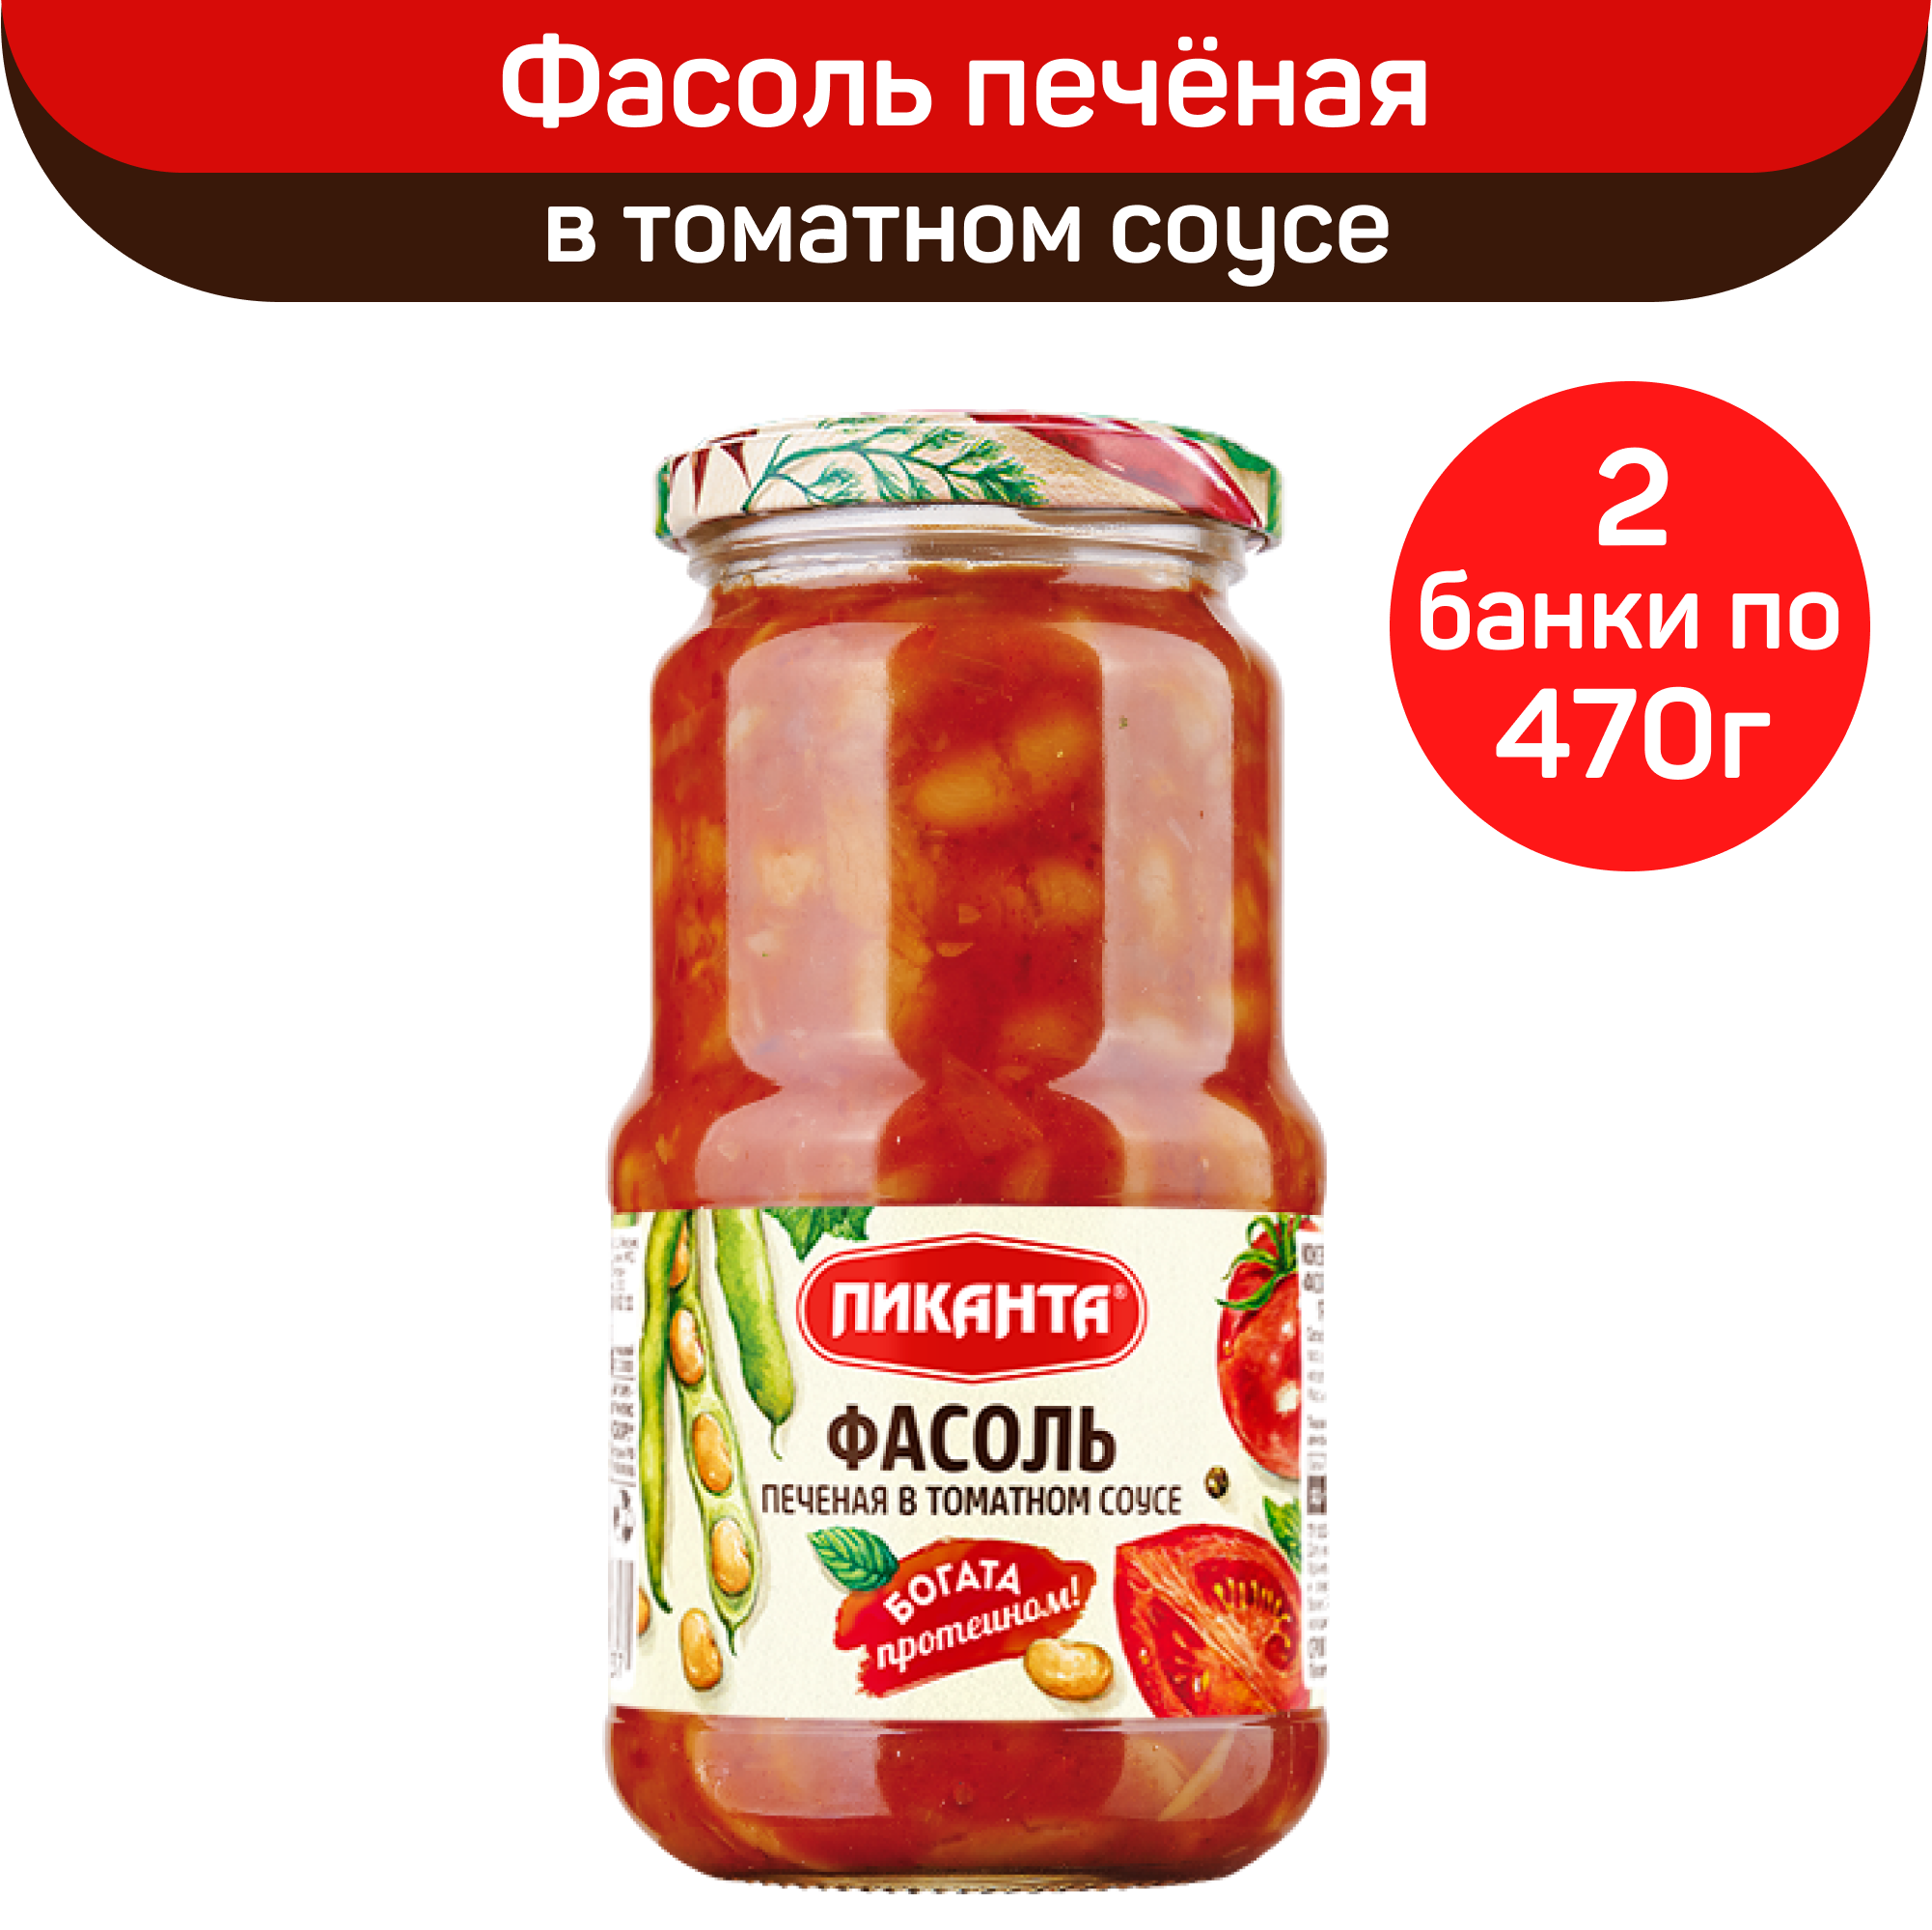 Фасоль Пиканта печеная в томатном соусе, 2 шт по 470 г